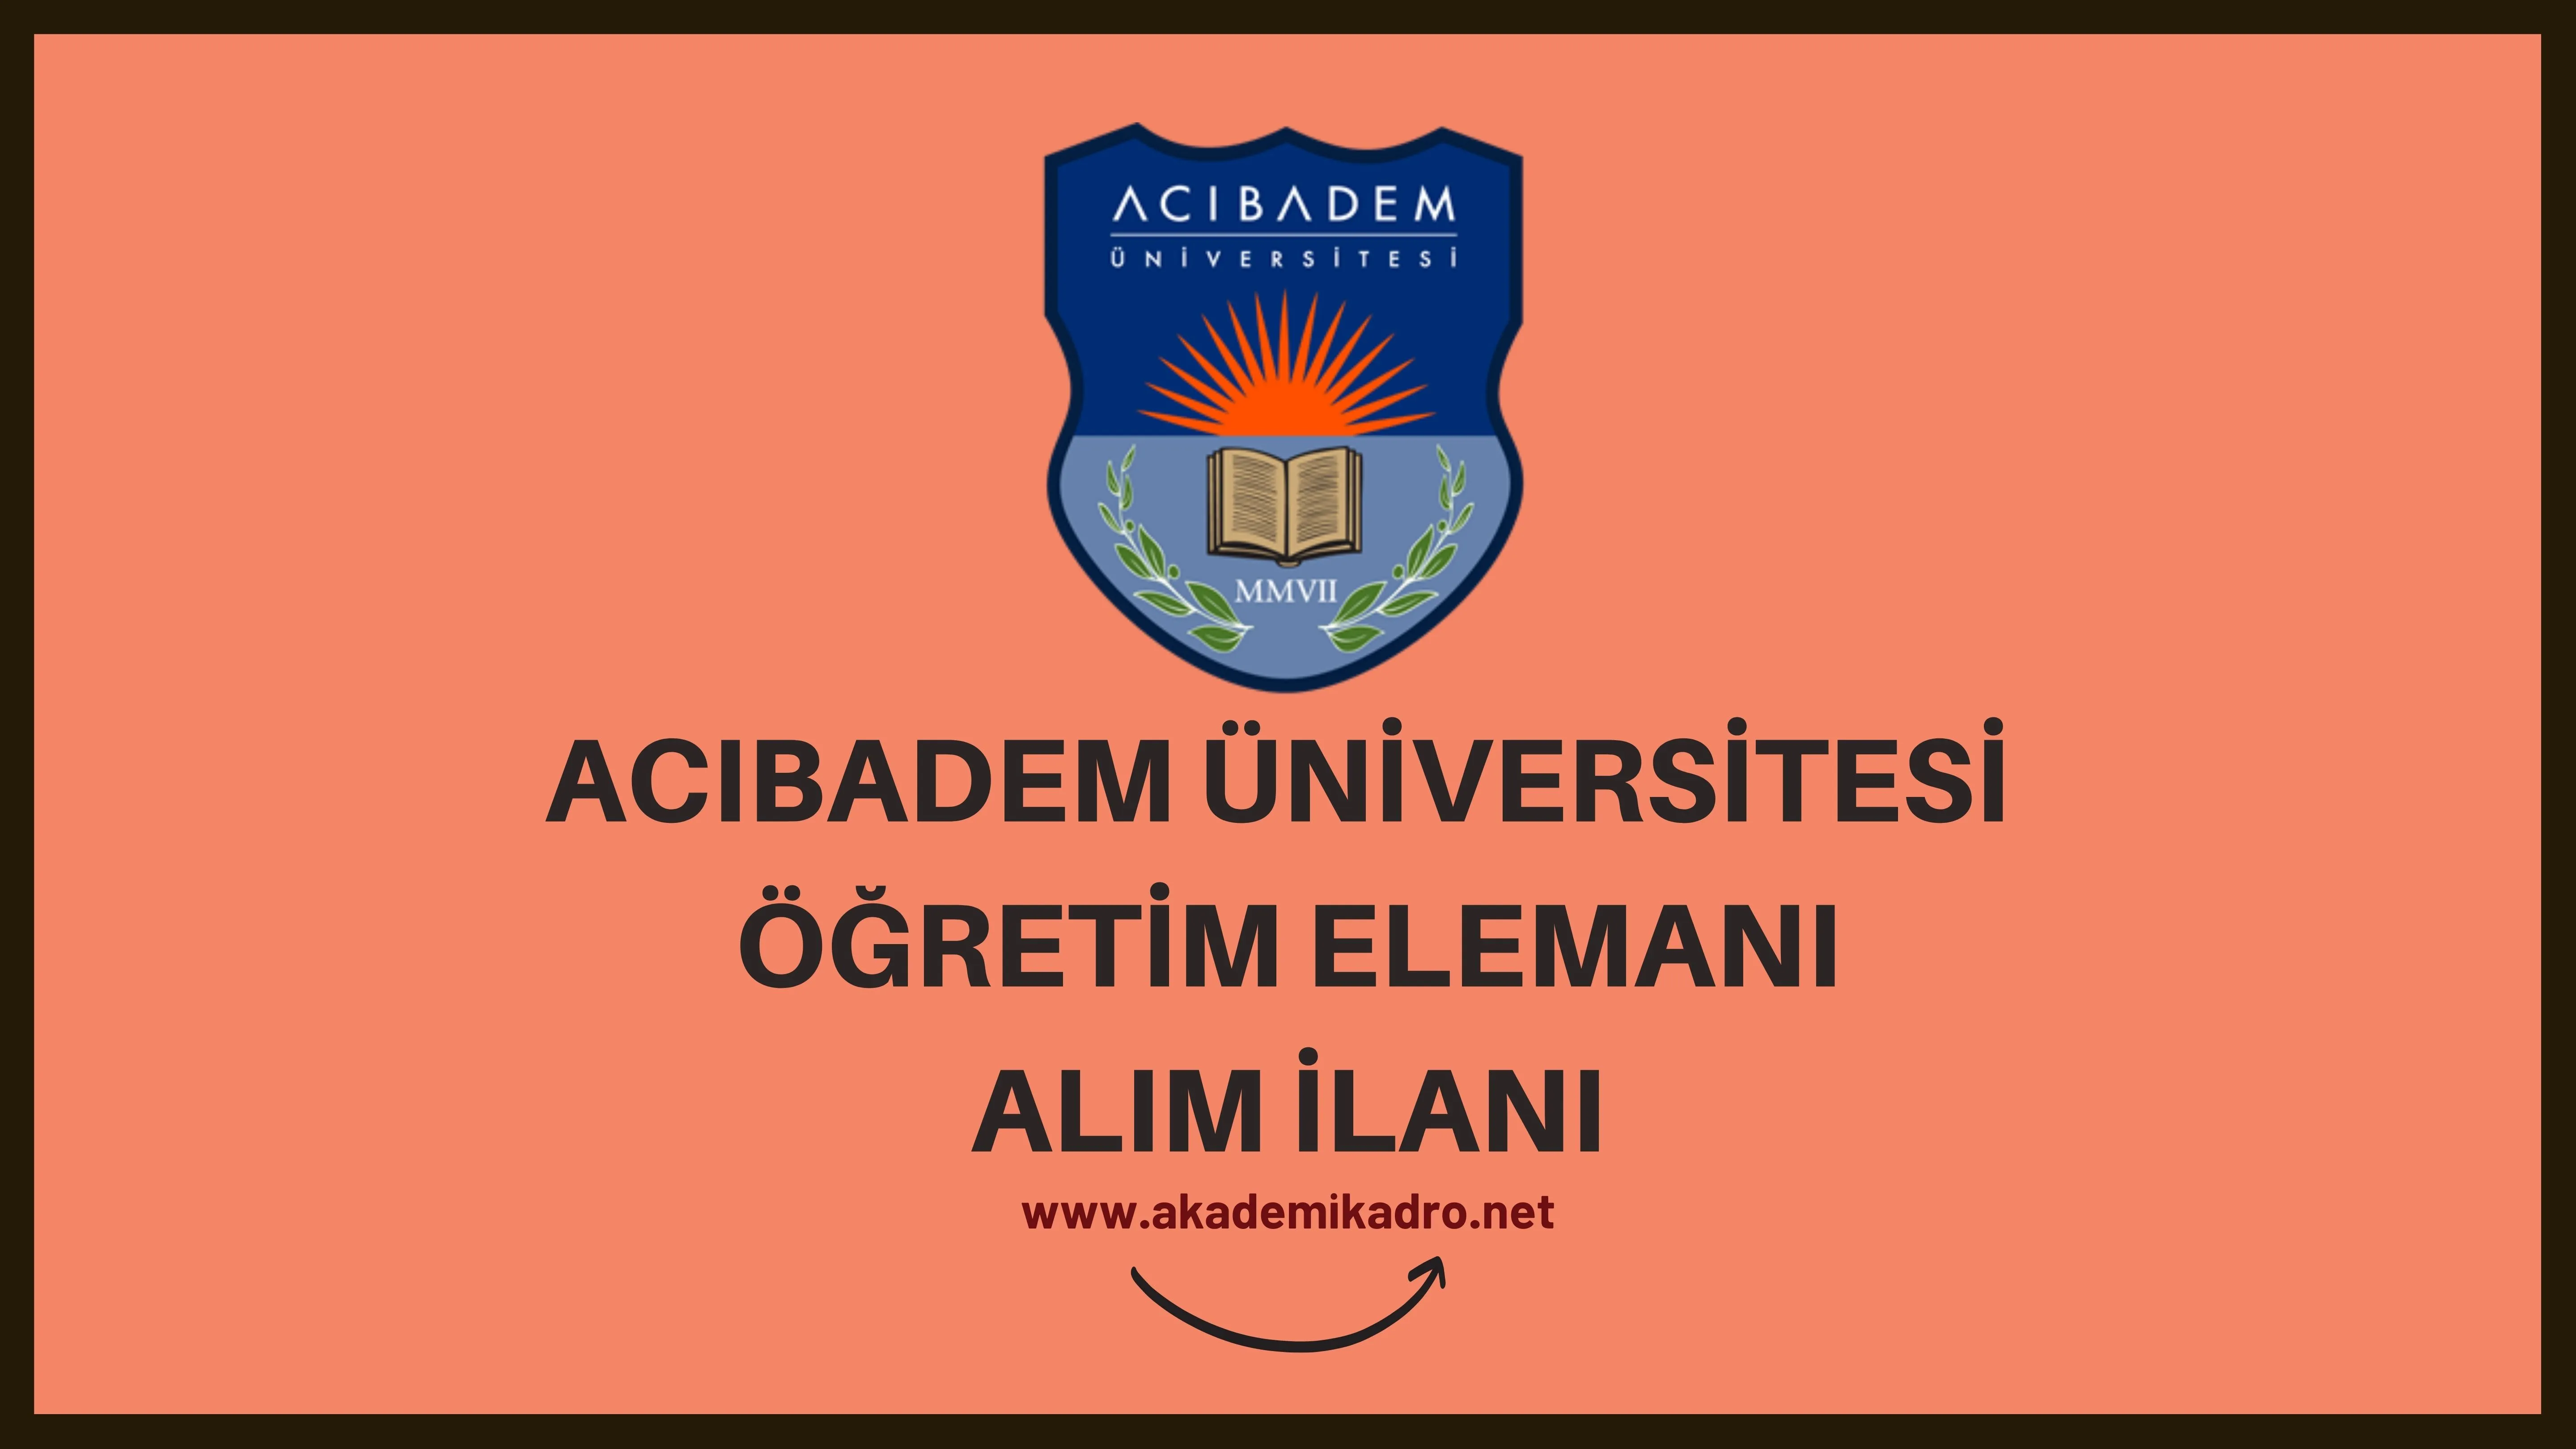 Acıbadem Mehmet Ali Aydınlar Üniversitesi 2 Öğretim görevlisi alacak. Son başvuru tarihi 20 Ekim 2022.